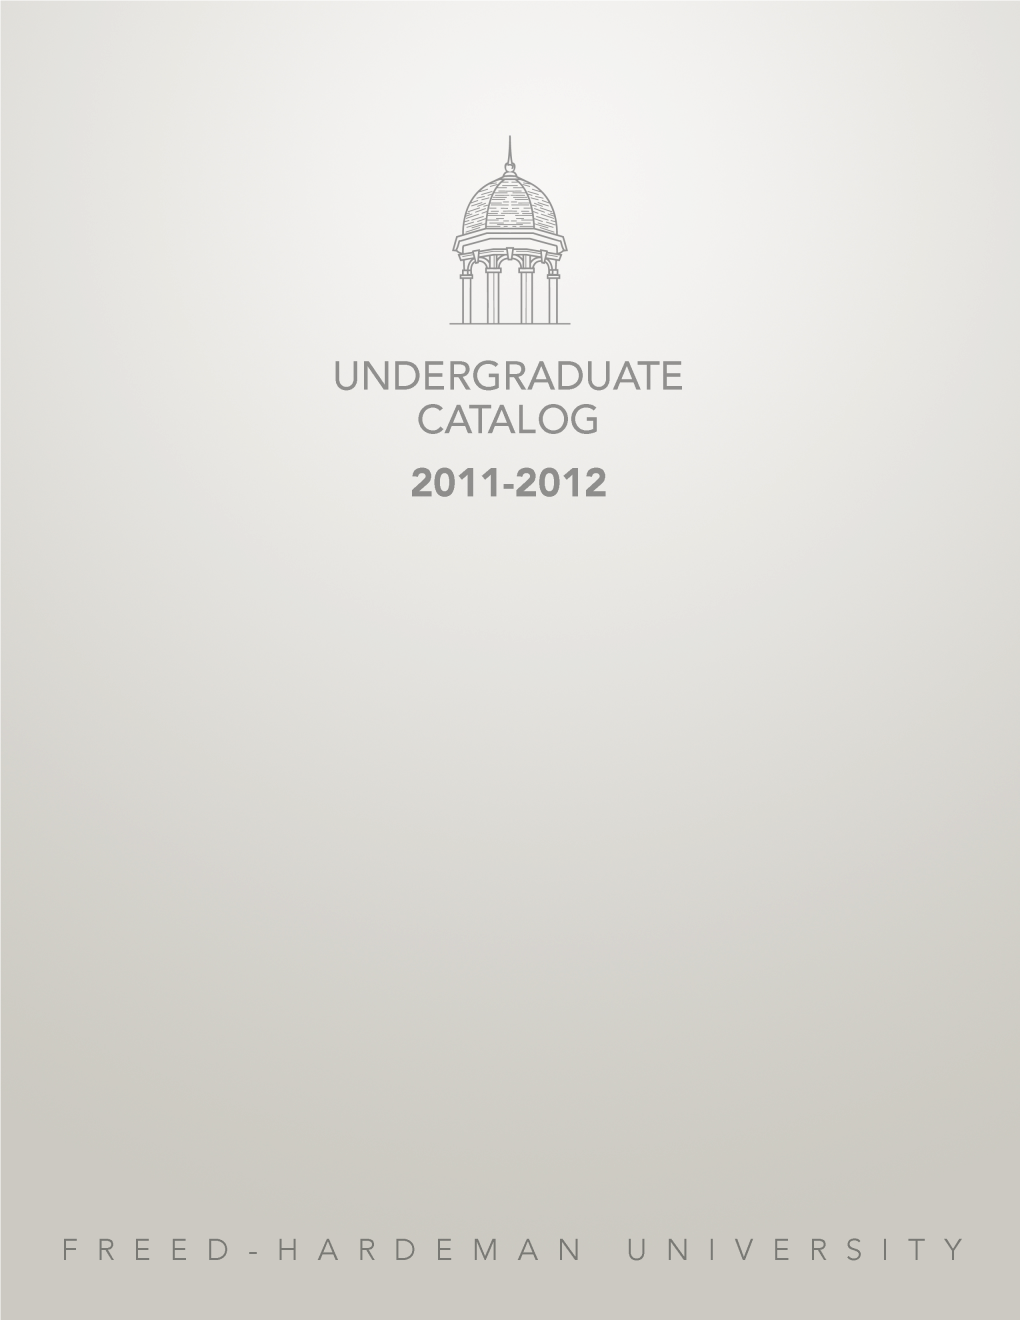 2011-12 Undergraduate Catalog of Freed-Hardeman University